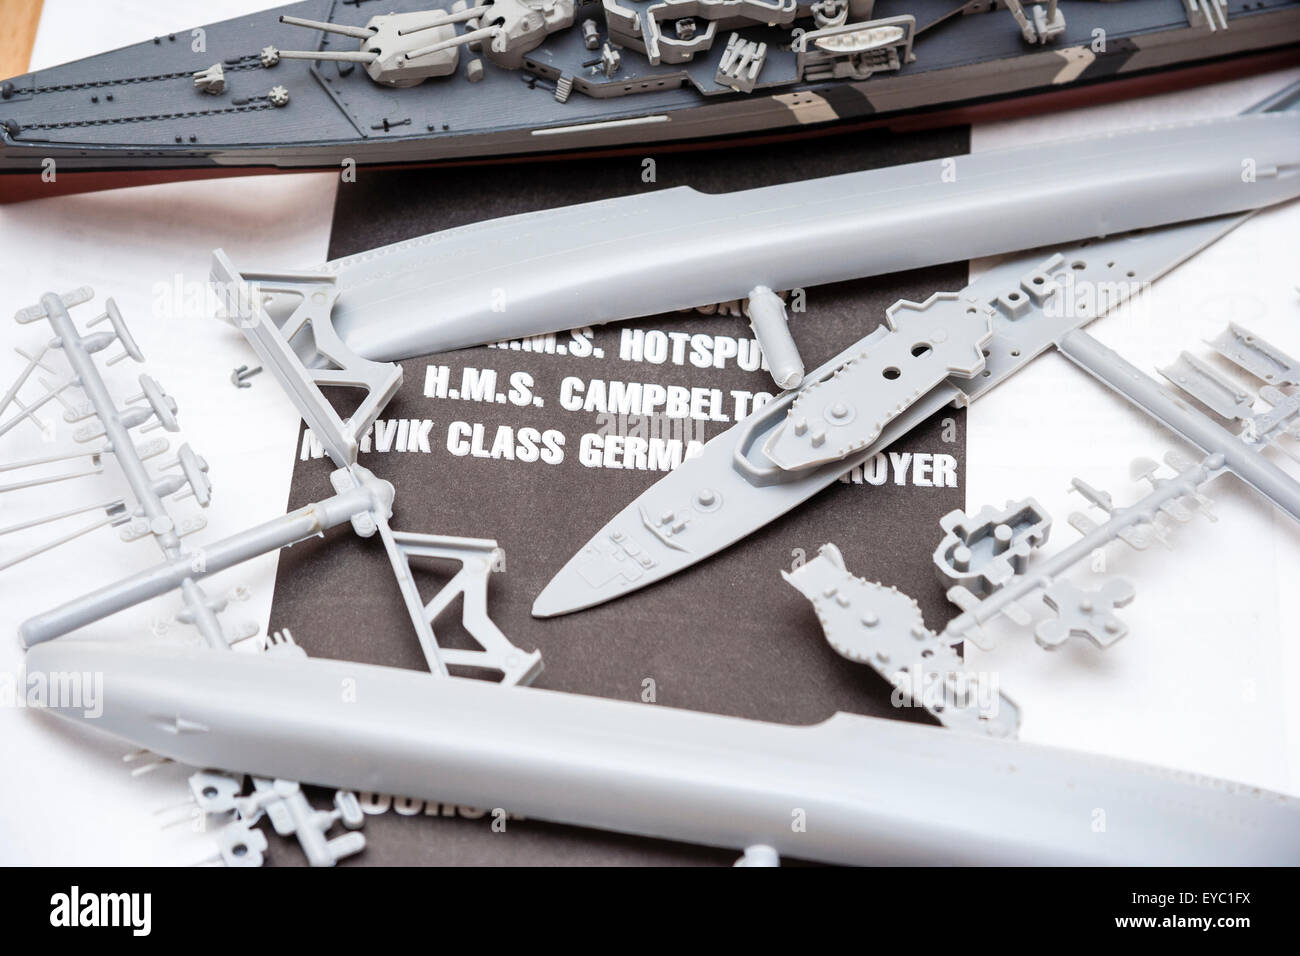 Italeri Modell Kunststoff Kriegsschiff Kit. Satz Teile auf die Anweisungen unter anspornen. Hintergrund ist ein fertig lackiert Modell der Deutschen Schlachtschiff. Stockfoto